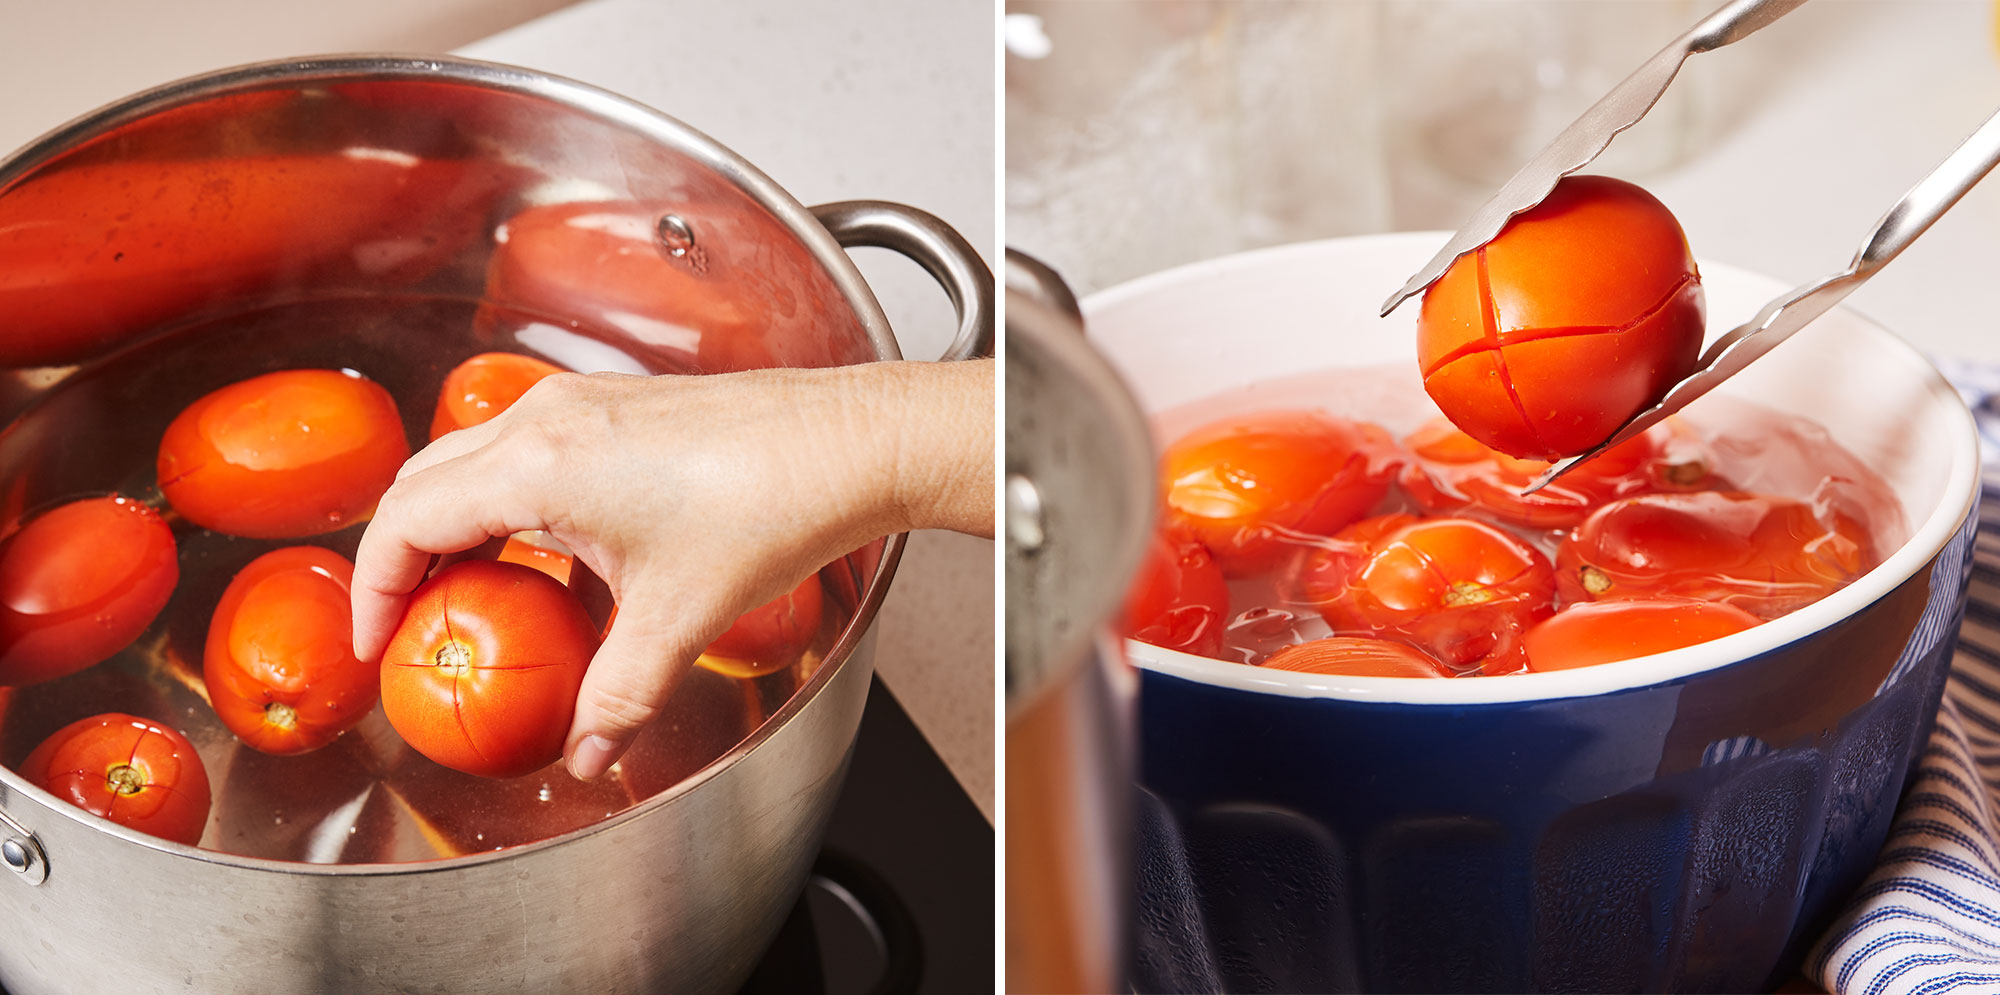 Image de gauche : Personne ajoutant des tomates dans une marmite pleine d’eau. Image de droite : Personne ajoutant des tomates bouillies dans un bol d’eau glacée.